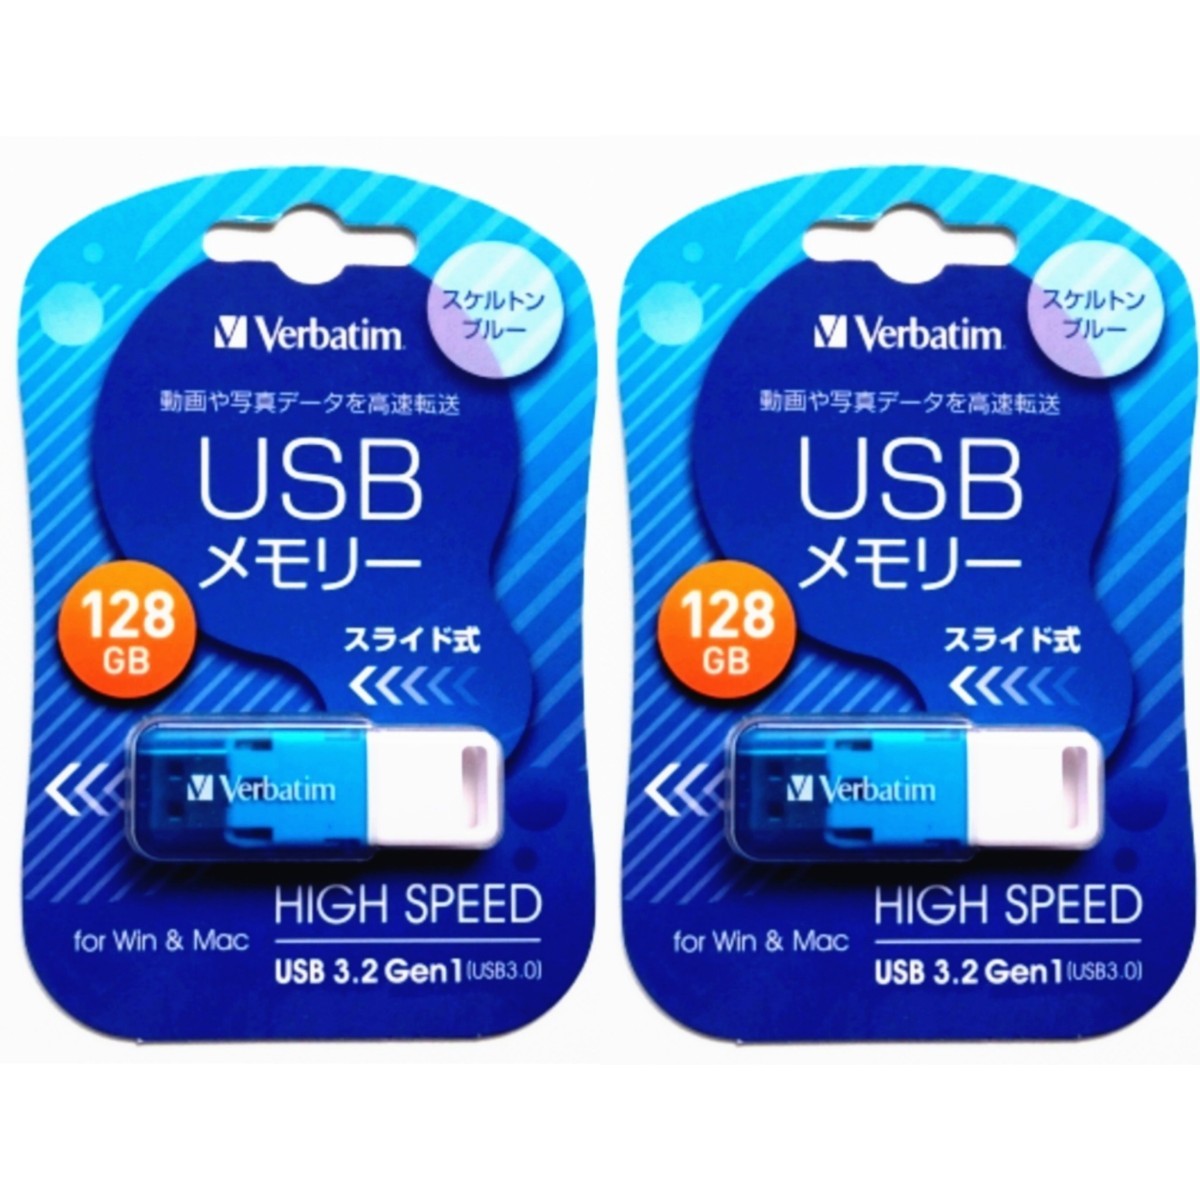 スライド式USBメモリ 128GB USB3.1(Gen1) USBSSG128GBV1 2セット【1円スタート出品・新品・送料無料】_画像1